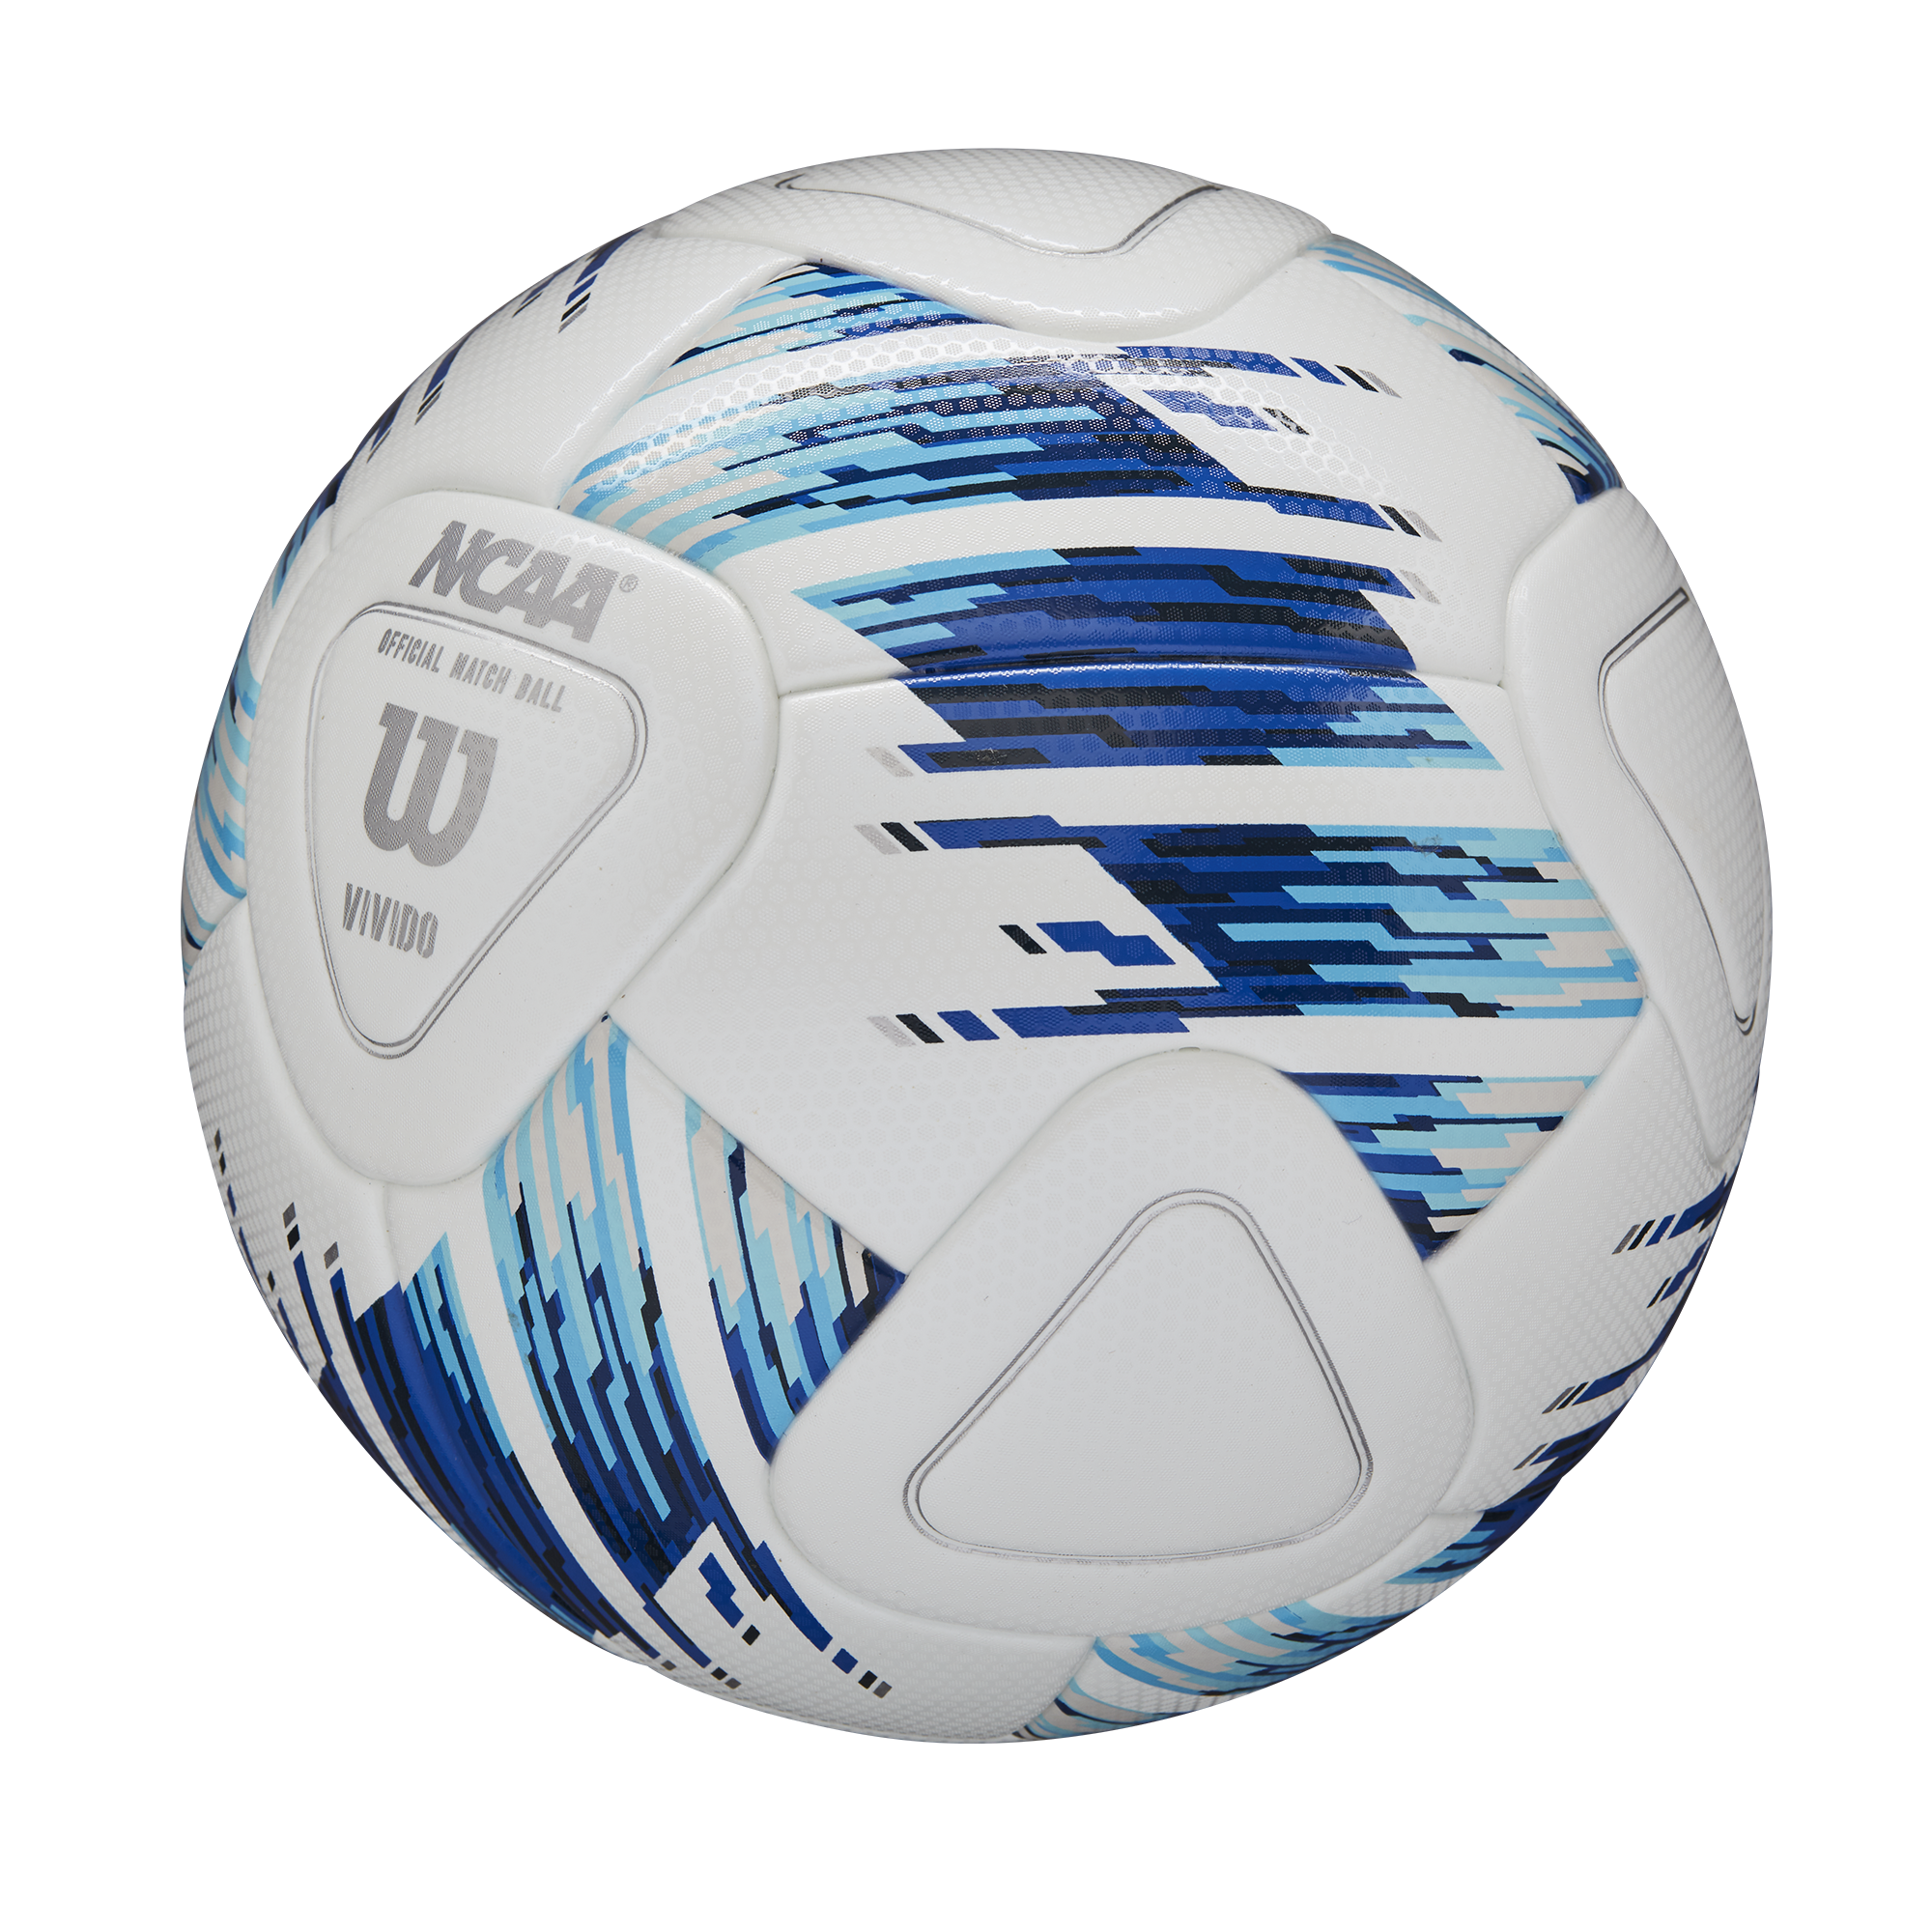 Wilson NCAA Vivido Soccer Ball